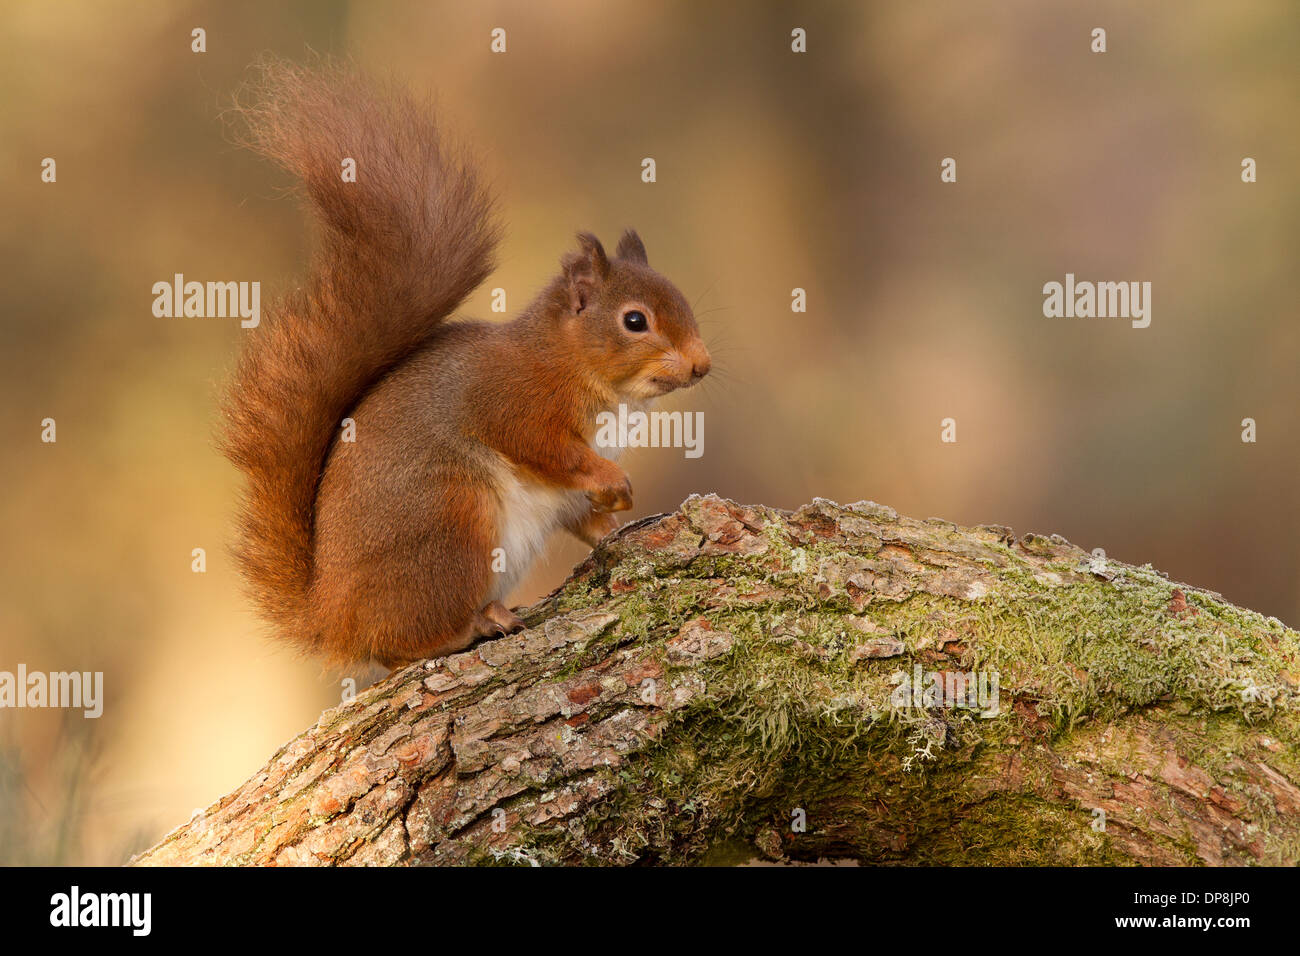 Red Squirrel, Sciurus vulgaris on a log Stock Photo